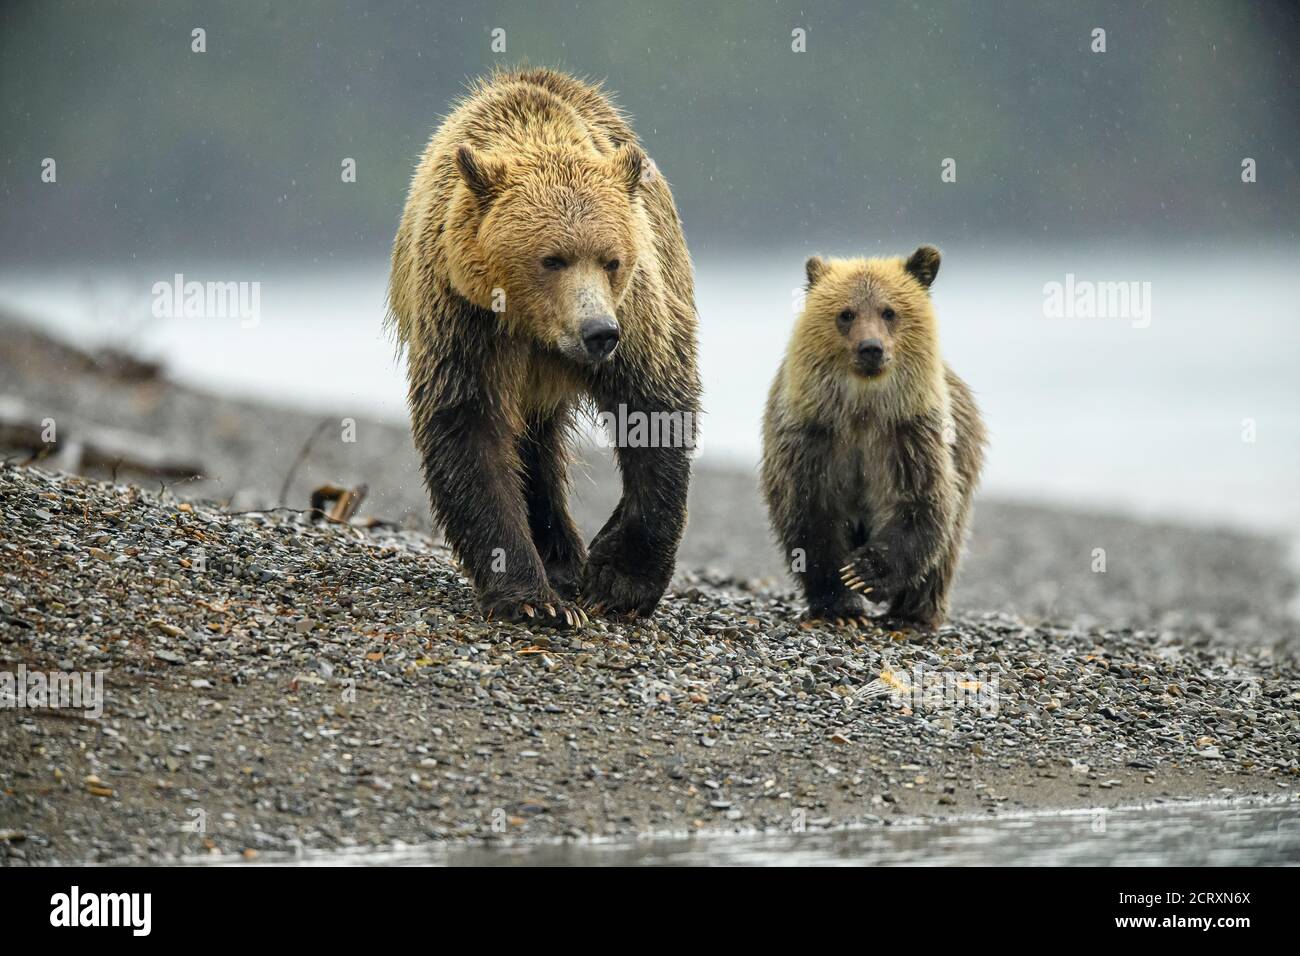 Ours grizzli (Ursus arctos) - CUB de première année suivant la mère le long d'une rivière à saumon, Chilcotin Wilderness, BC Interior, Canada Banque D'Images